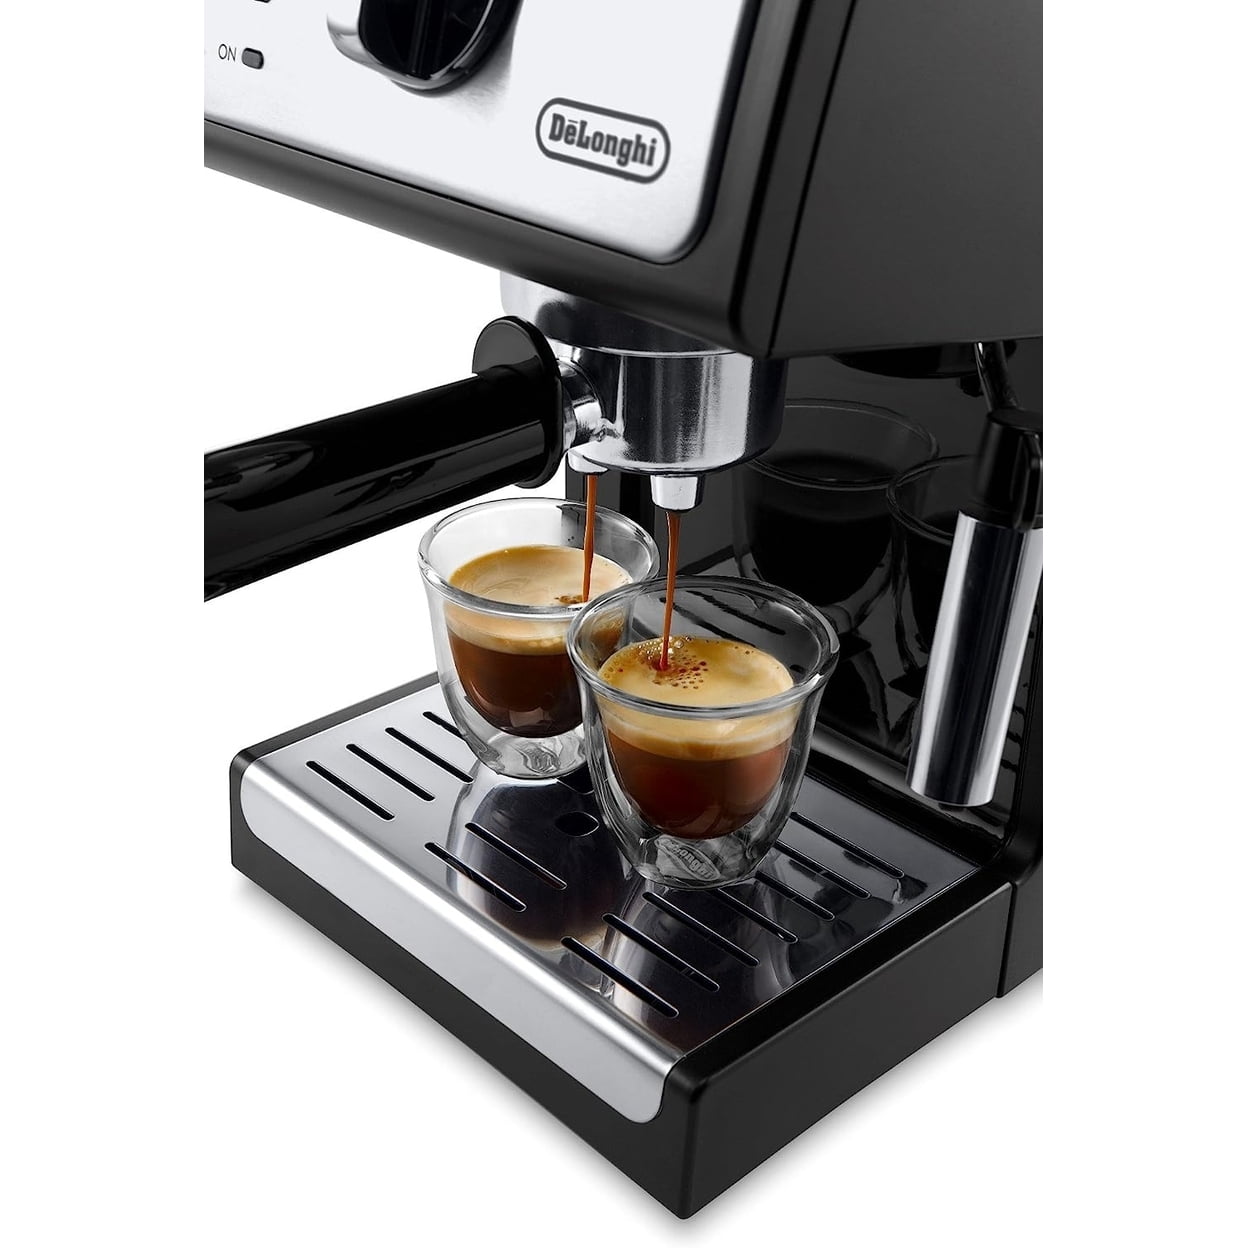 De'Longhi 15 Bar Espresso and Cappuccino Machine with Premium